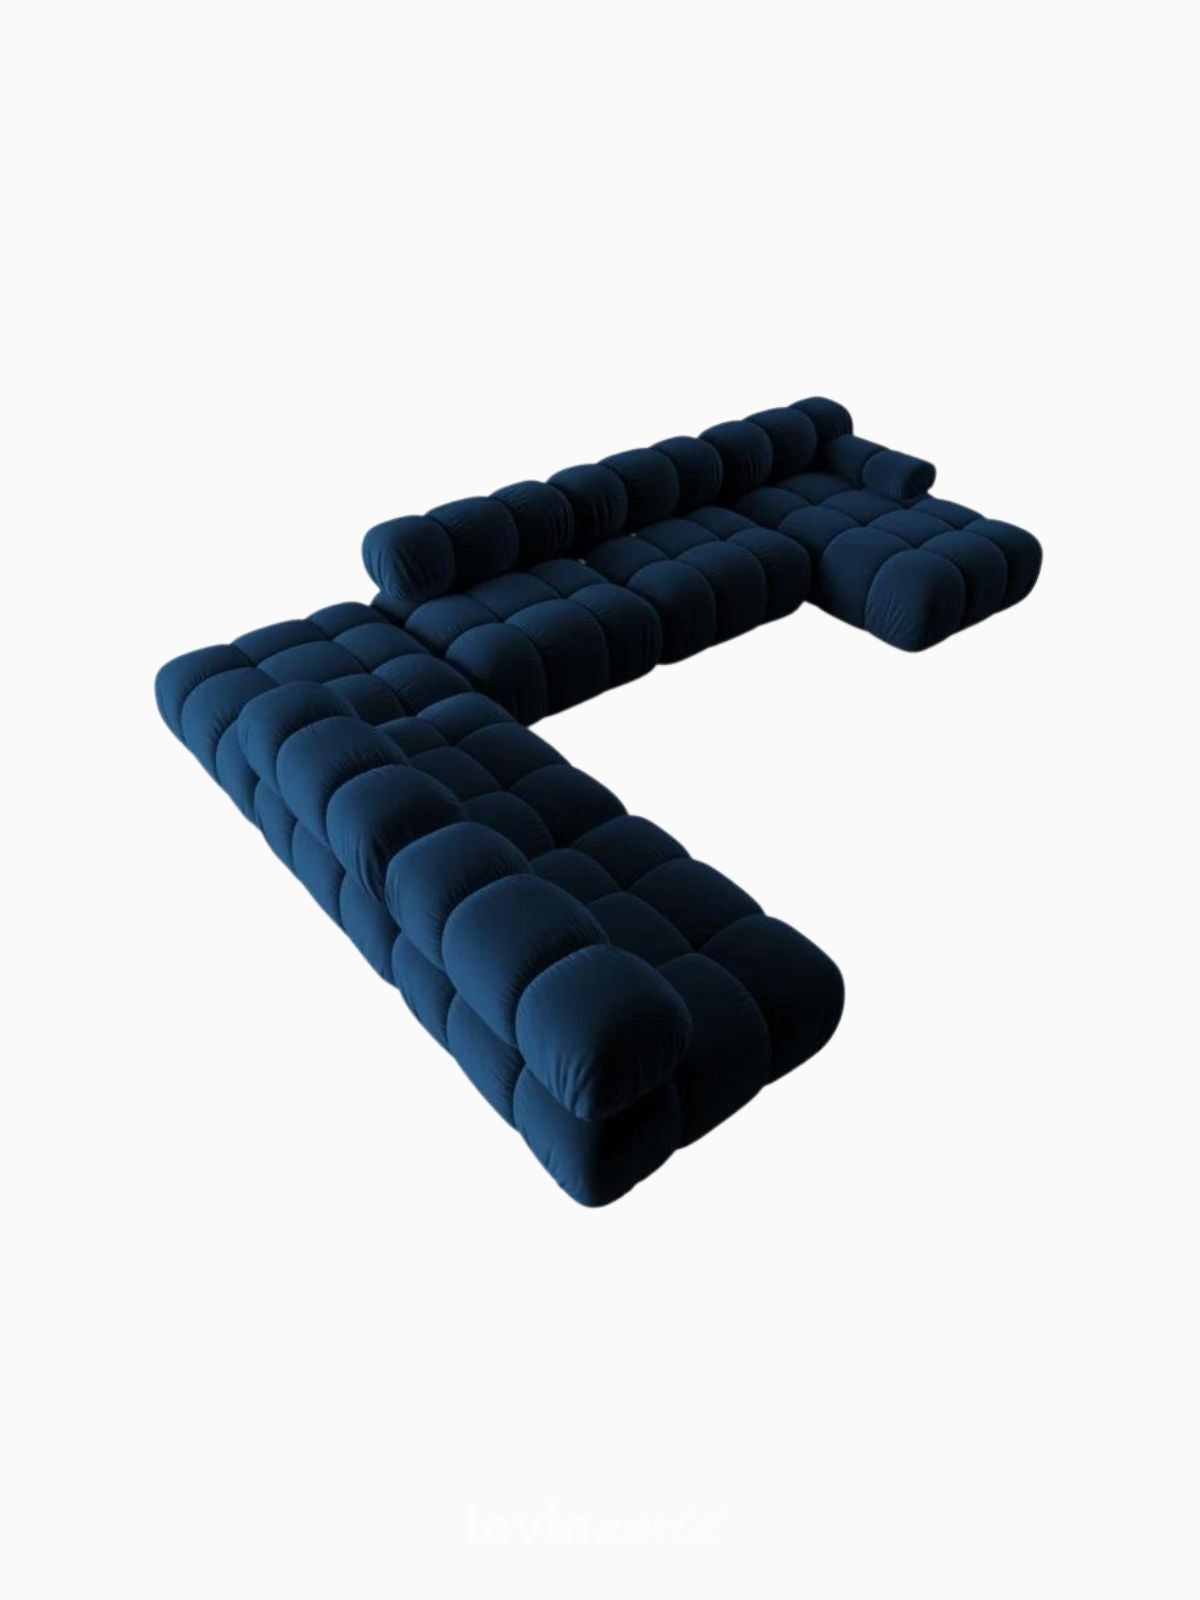 Divano modulare 7 posti Bellis in velluto, colore blu-3